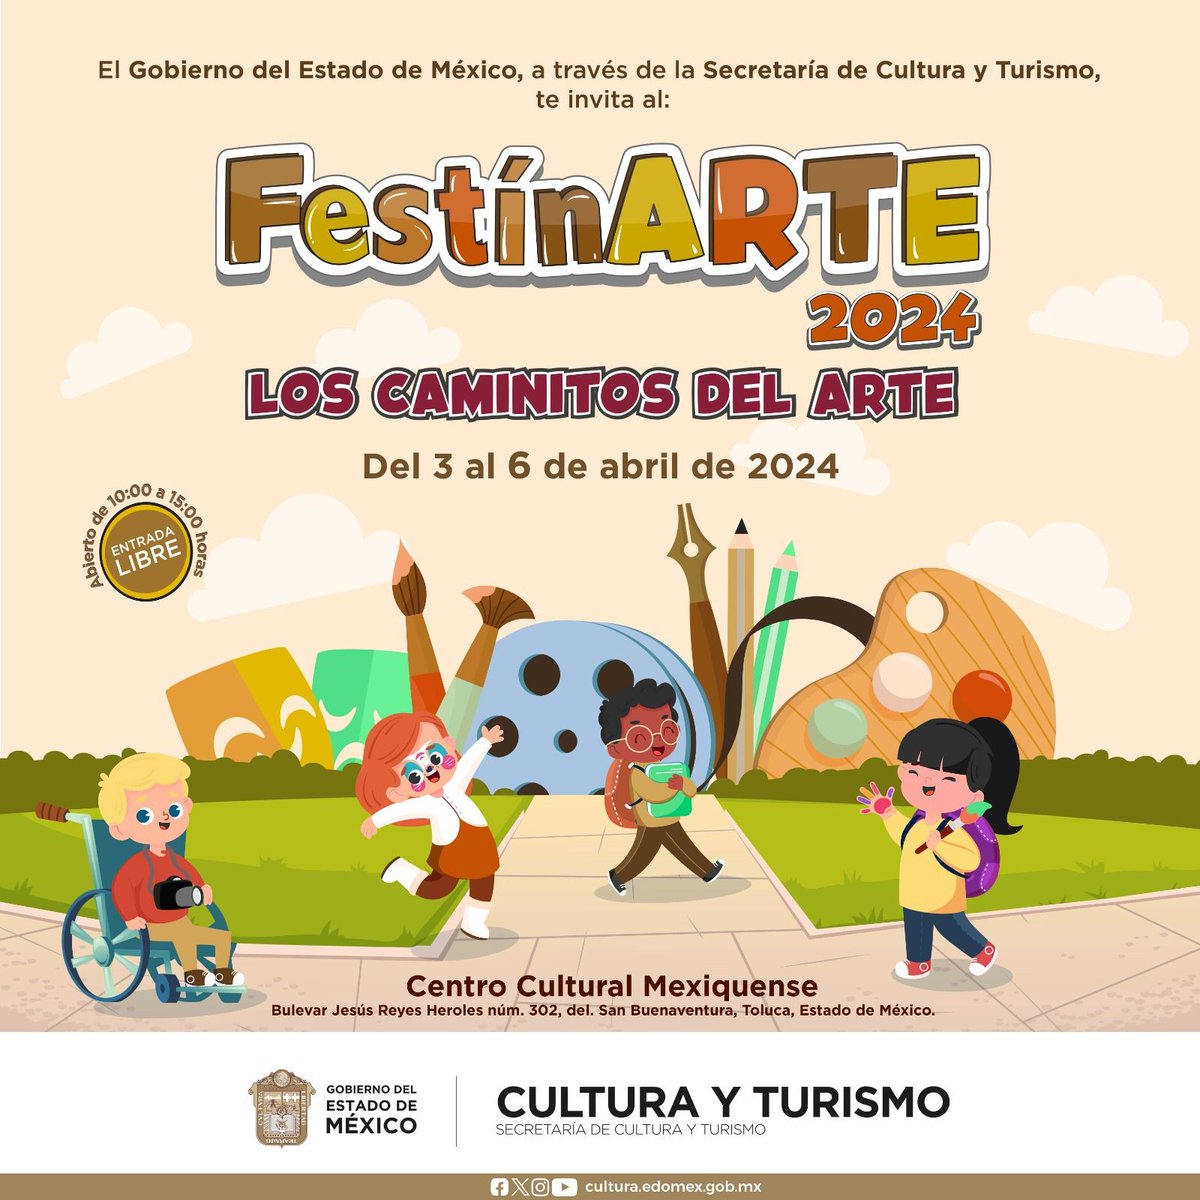 La @CulturaEdomex te invita al #FestínArte 2024 en el Centro Cultural Mexiquense, en donde los pequeños podrán disfrutar de actividades llenas de diversión y cultura con los #CaminitosDelArte. Entrada libre. Consulta aquí el programa completo: bit.ly/3VDvS0X ¡No faltes!